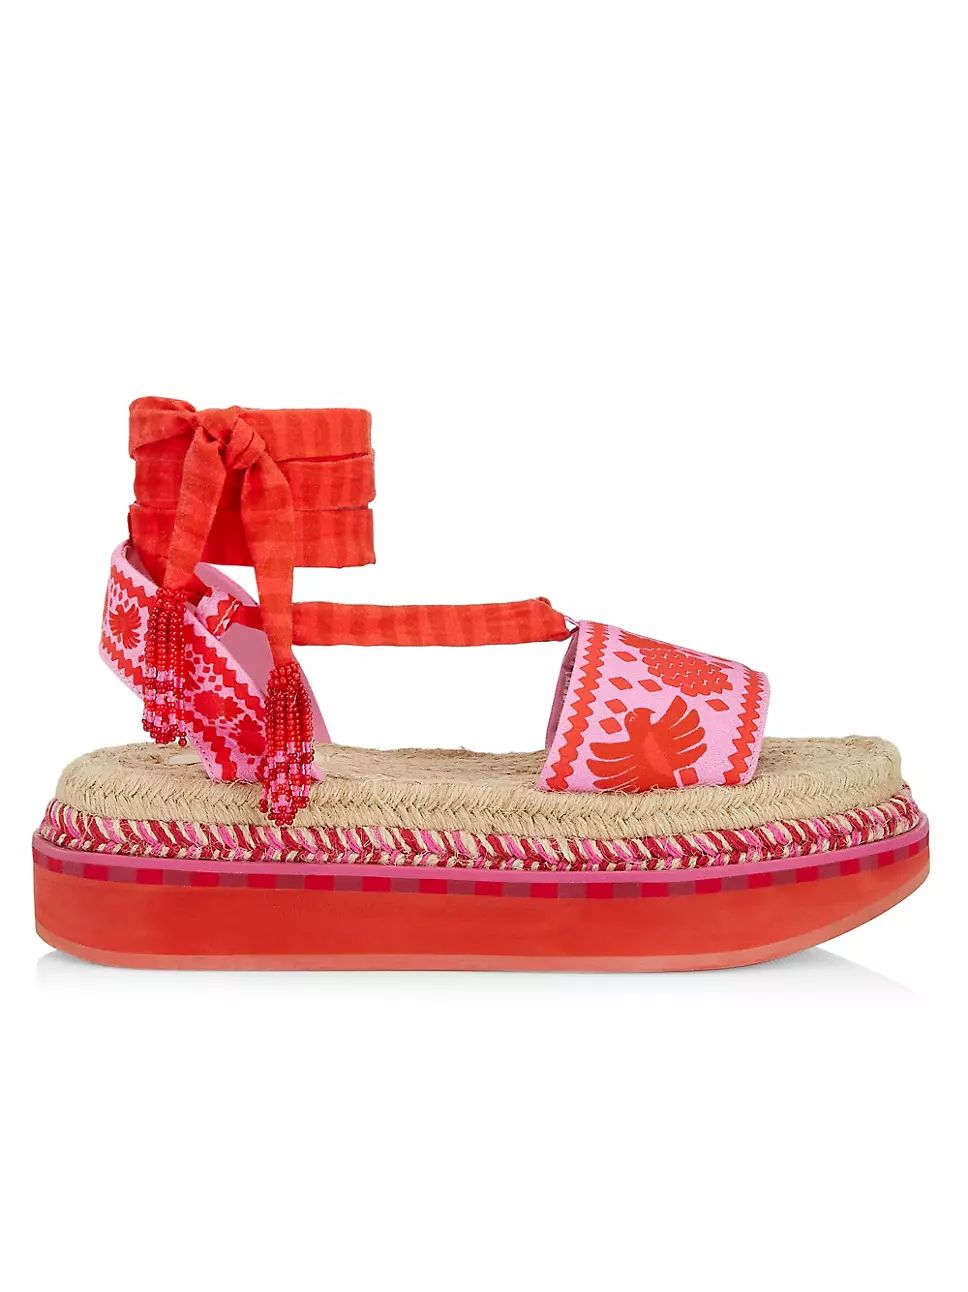 Red Jungle Scarf Platform Espadrille Sandals | Saks Fifth Avenue